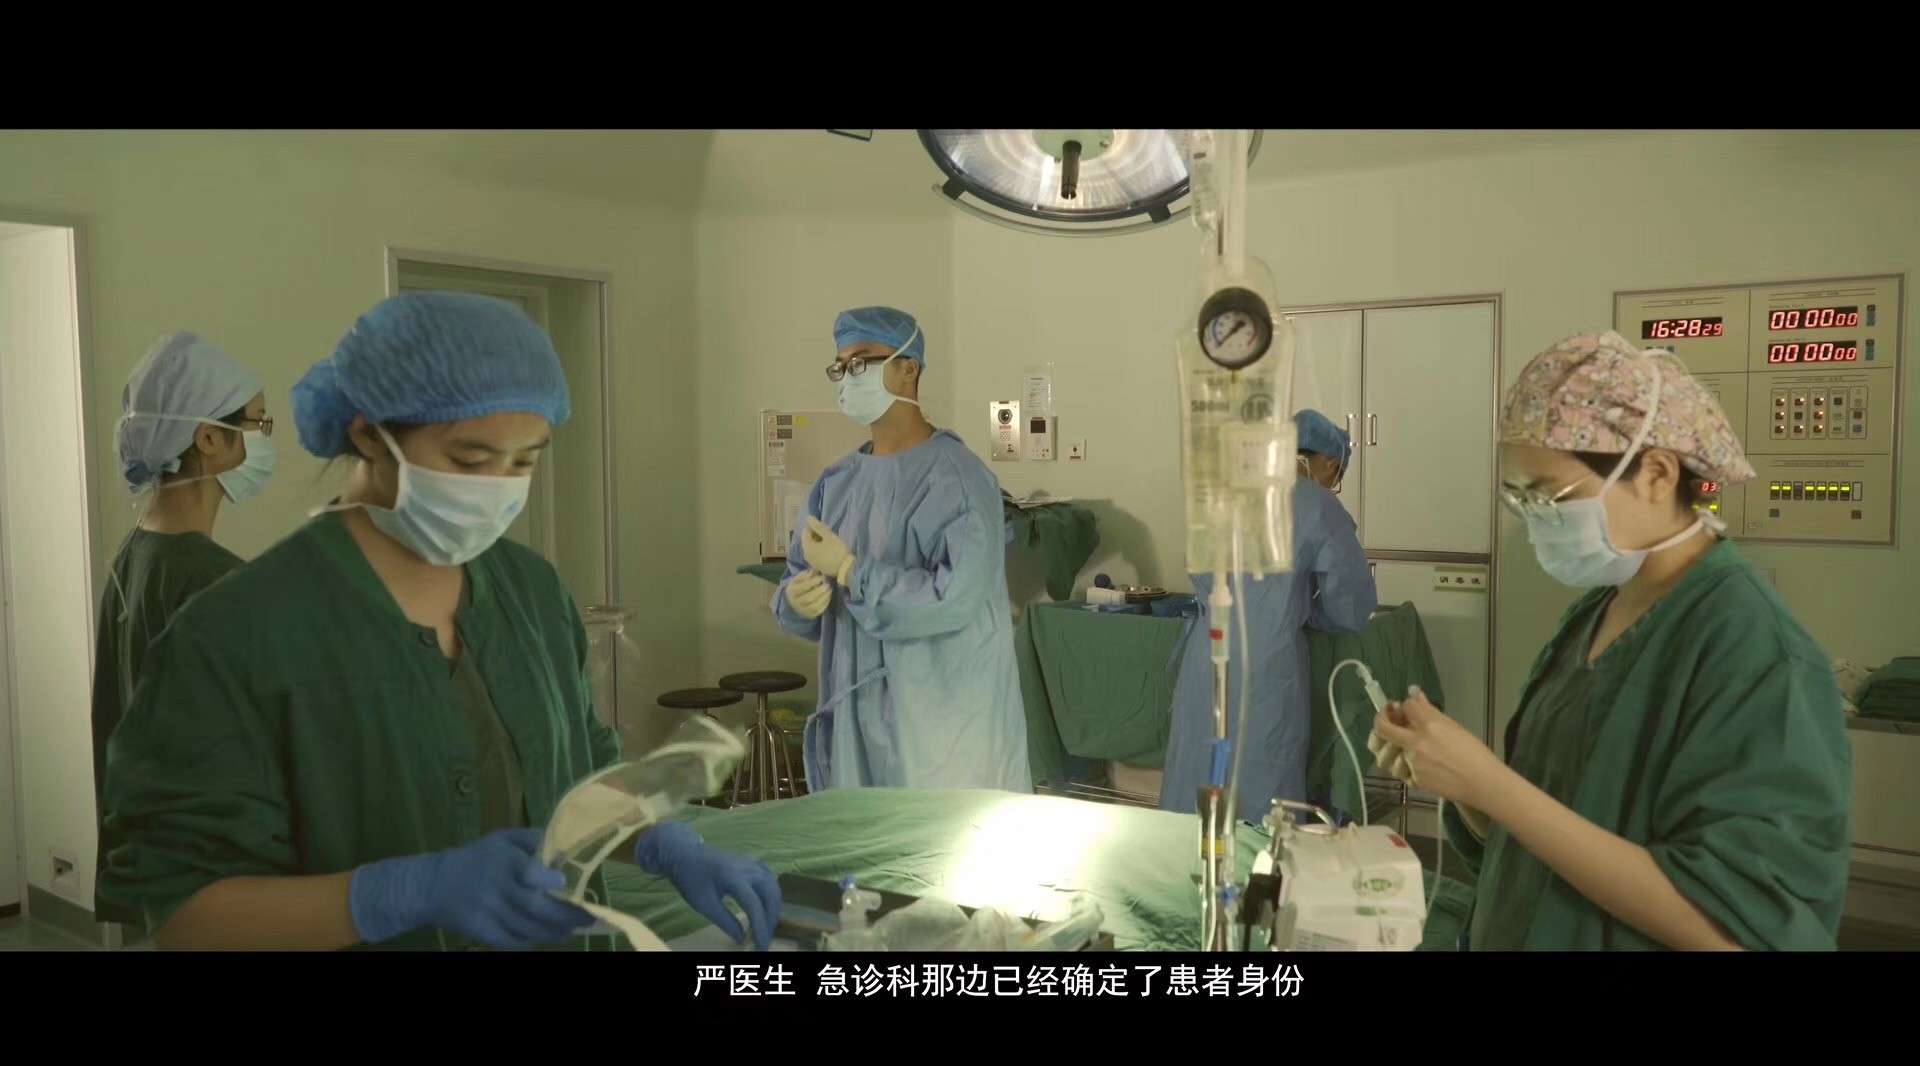 Dir·香港大学医院宣传片 《 重生》